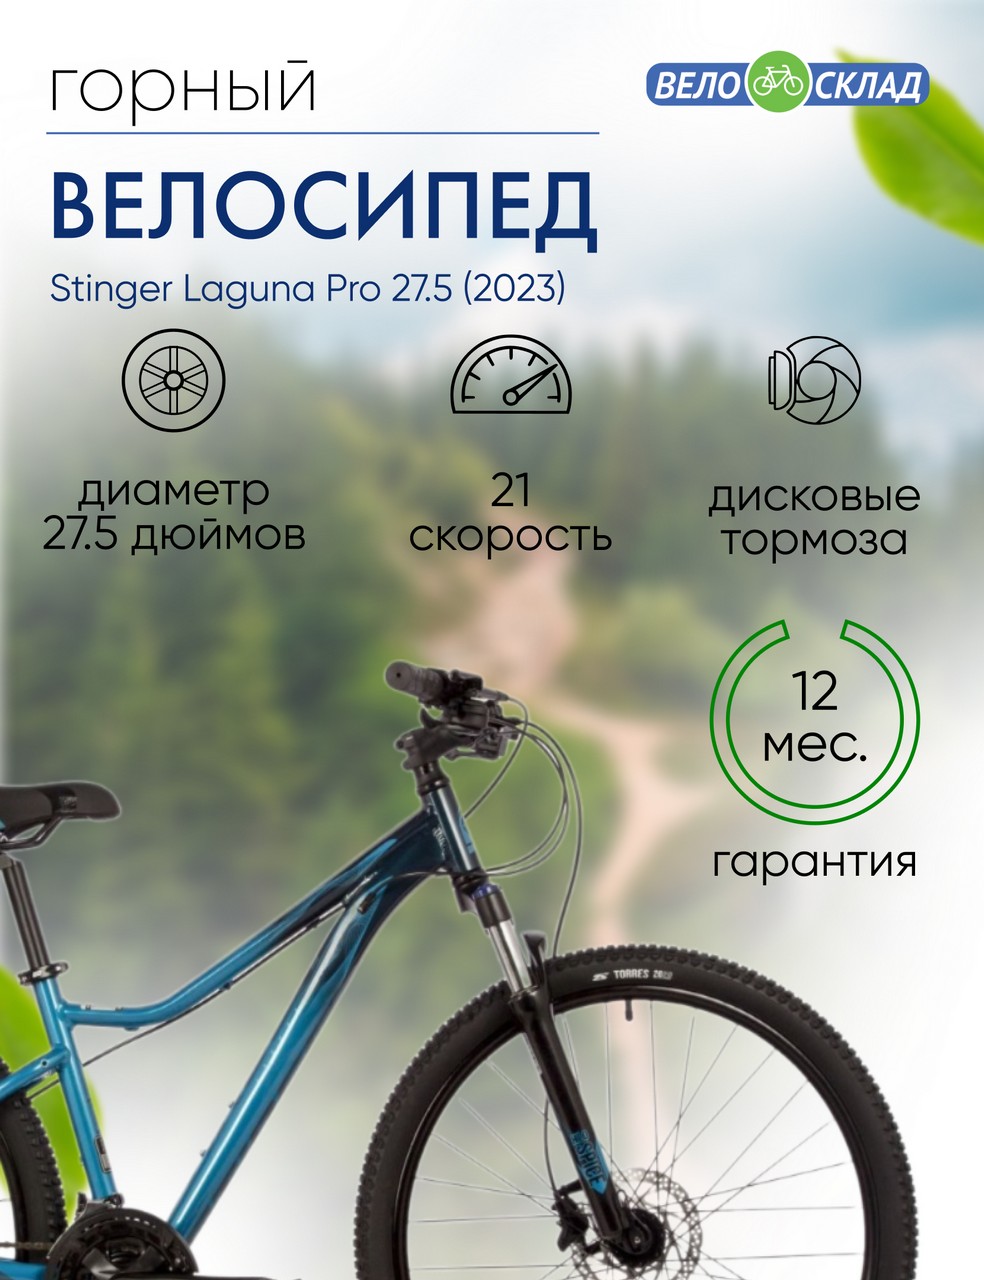 Женский велосипед Stinger Laguna Pro 27.5, год 2023, цвет Синий, ростовка 17